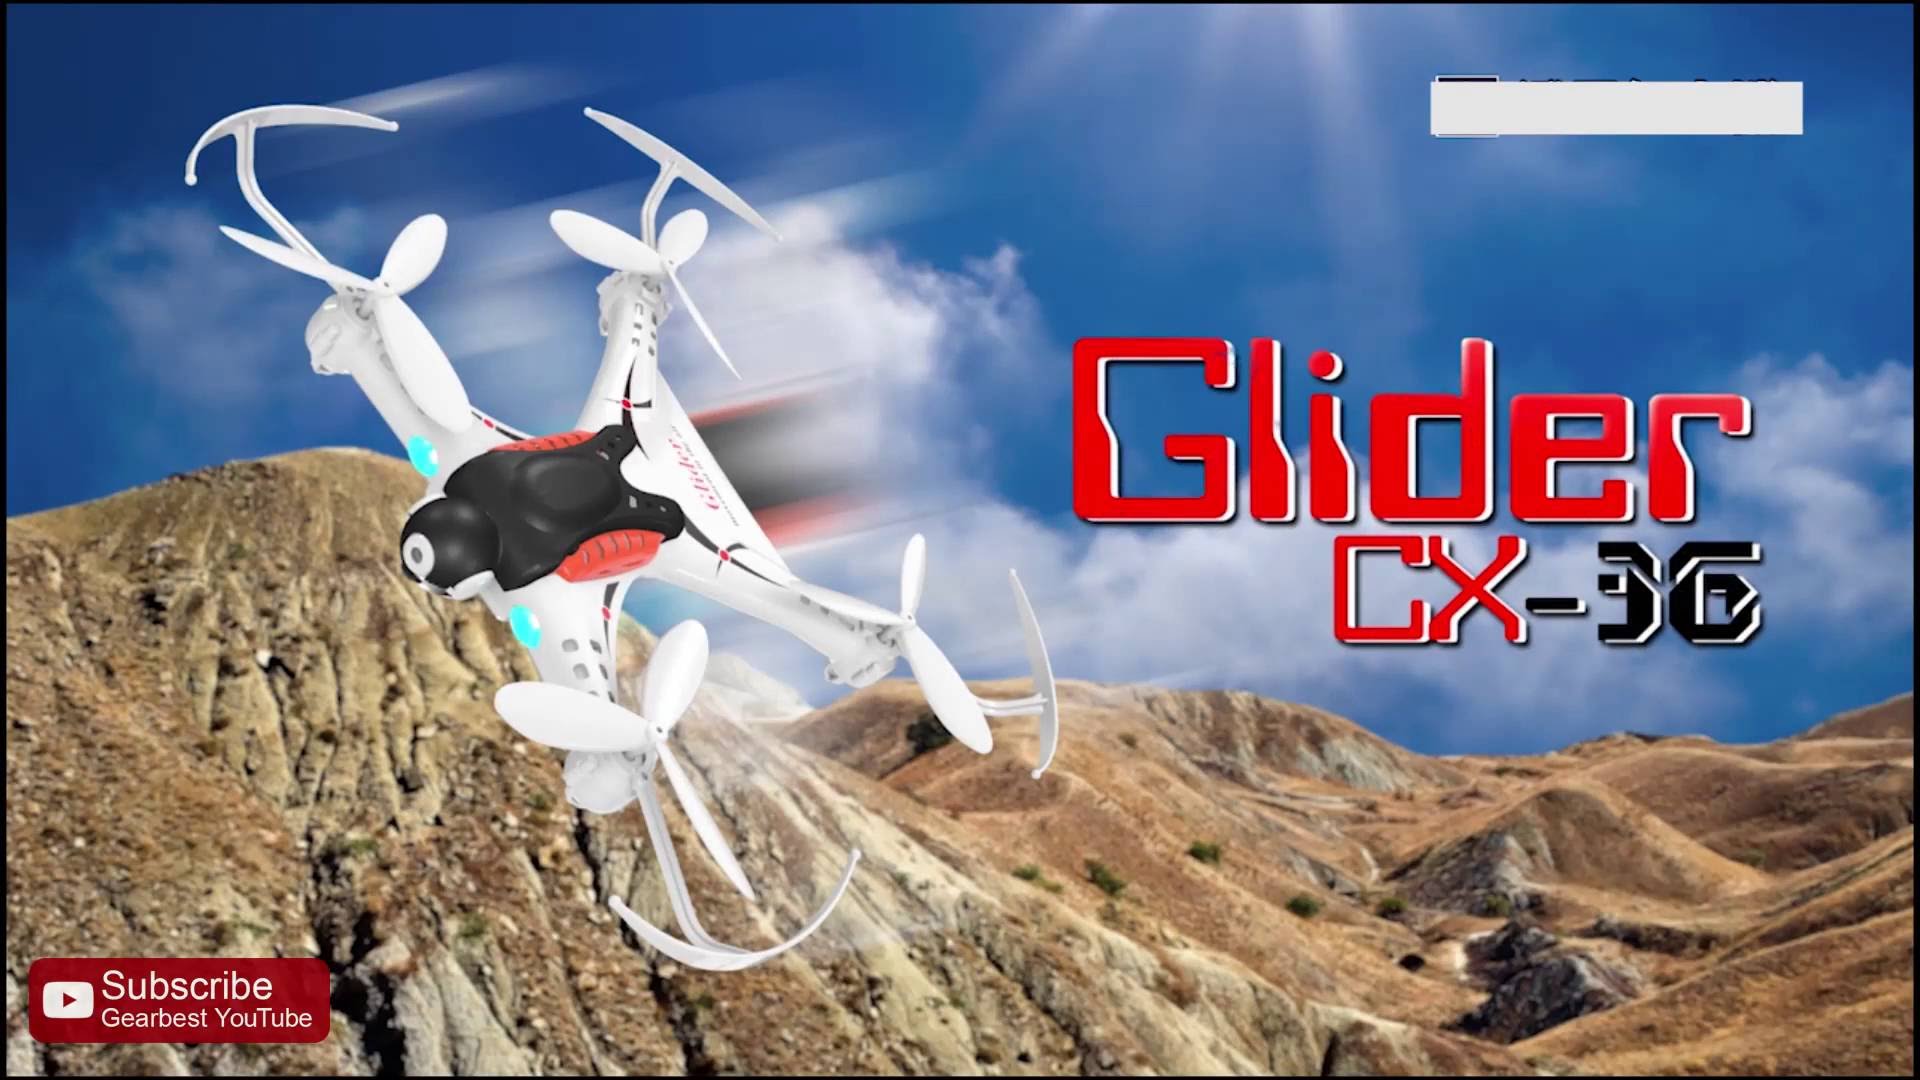 Cheerson CX RC Quadcopter RTF – Gearbest.com